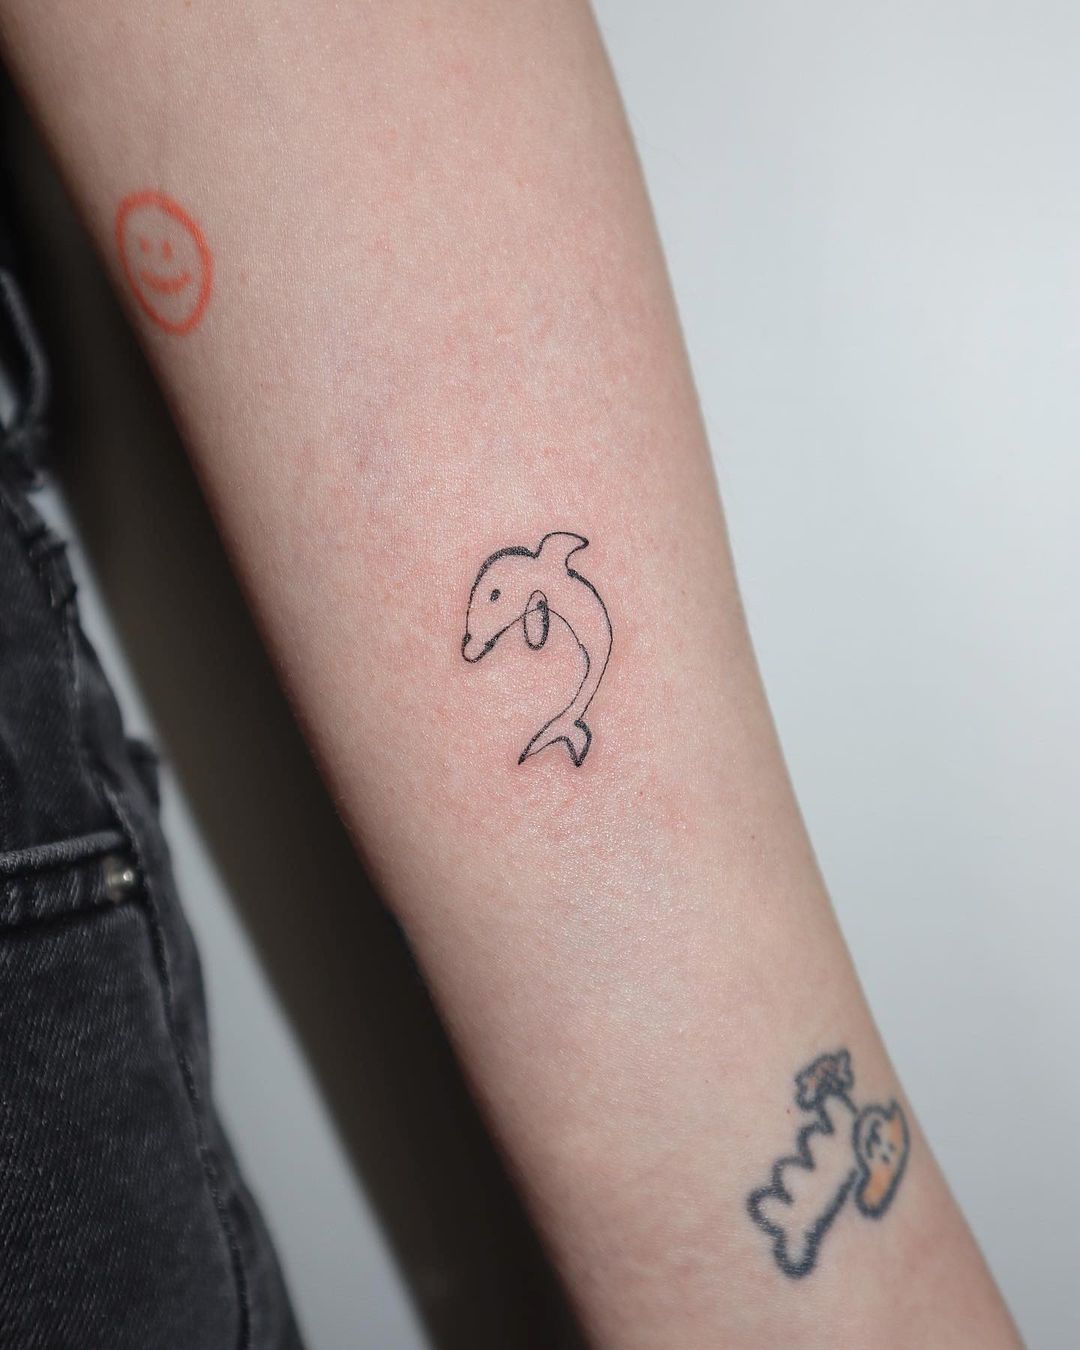 Fineline dolphin tattoo by joodletattoo